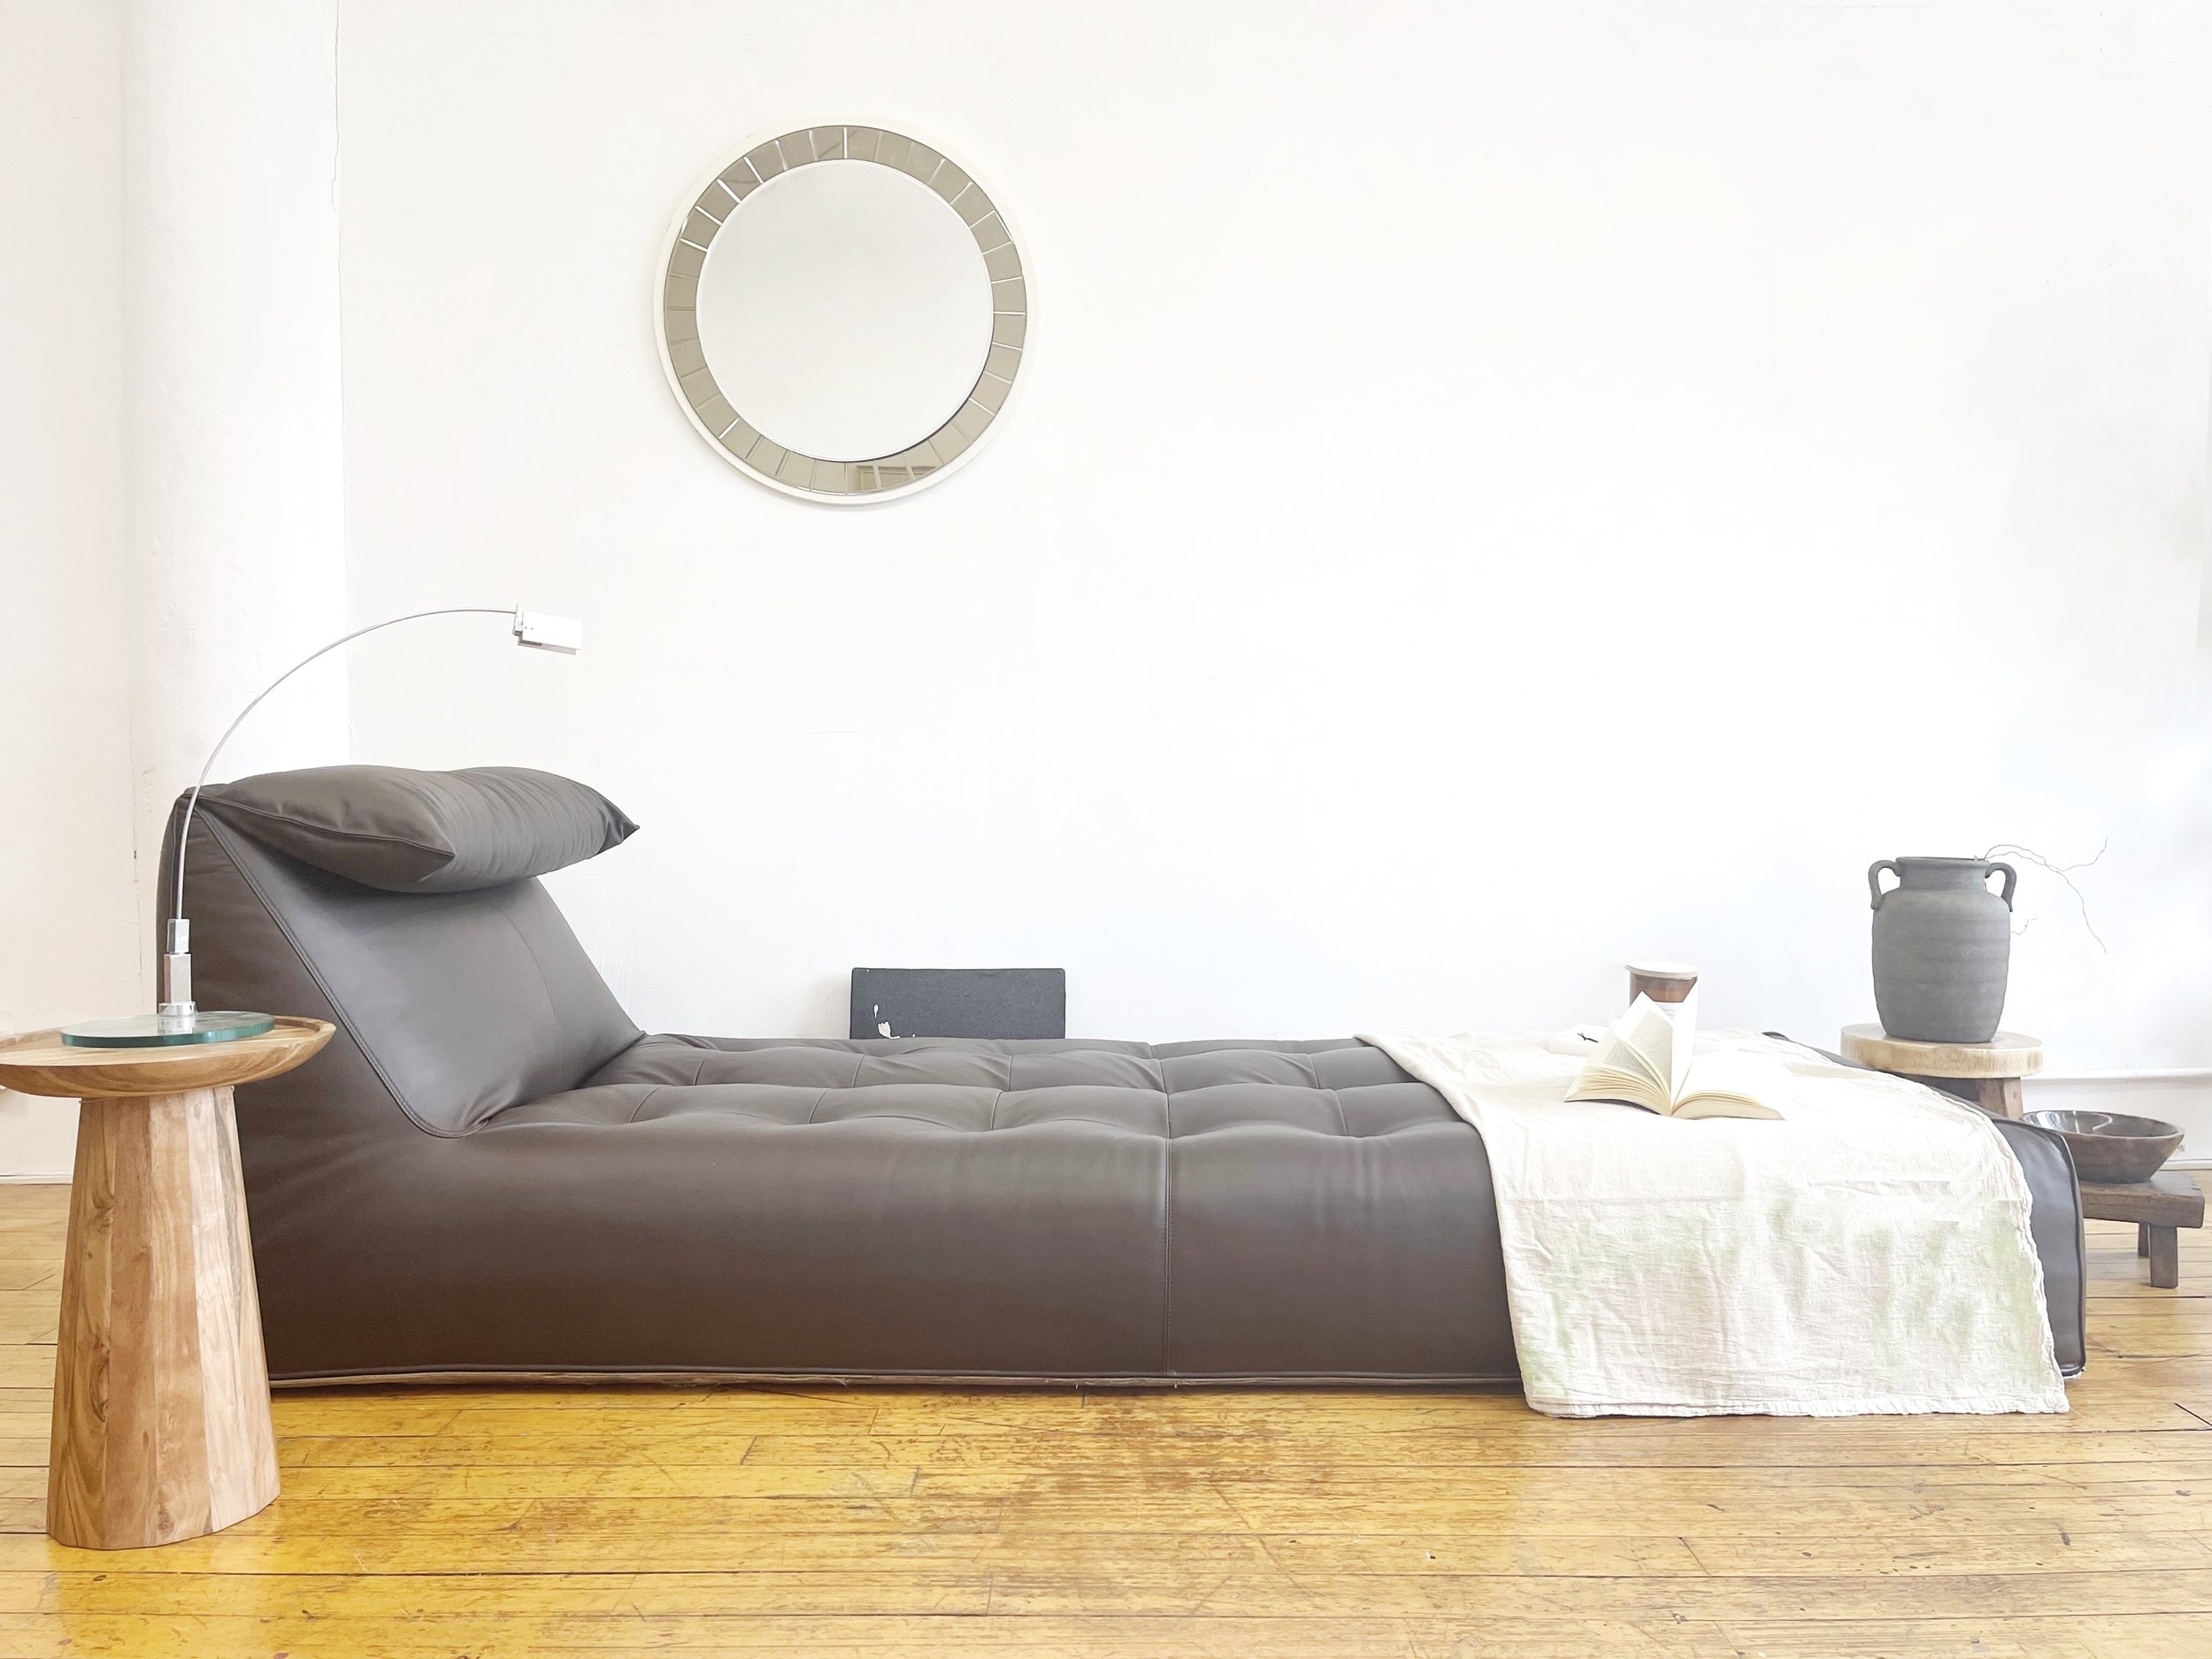 Vintage Le Bambole Sofa Day Bed, a timeless Mario Bellini Design for B&B Italia